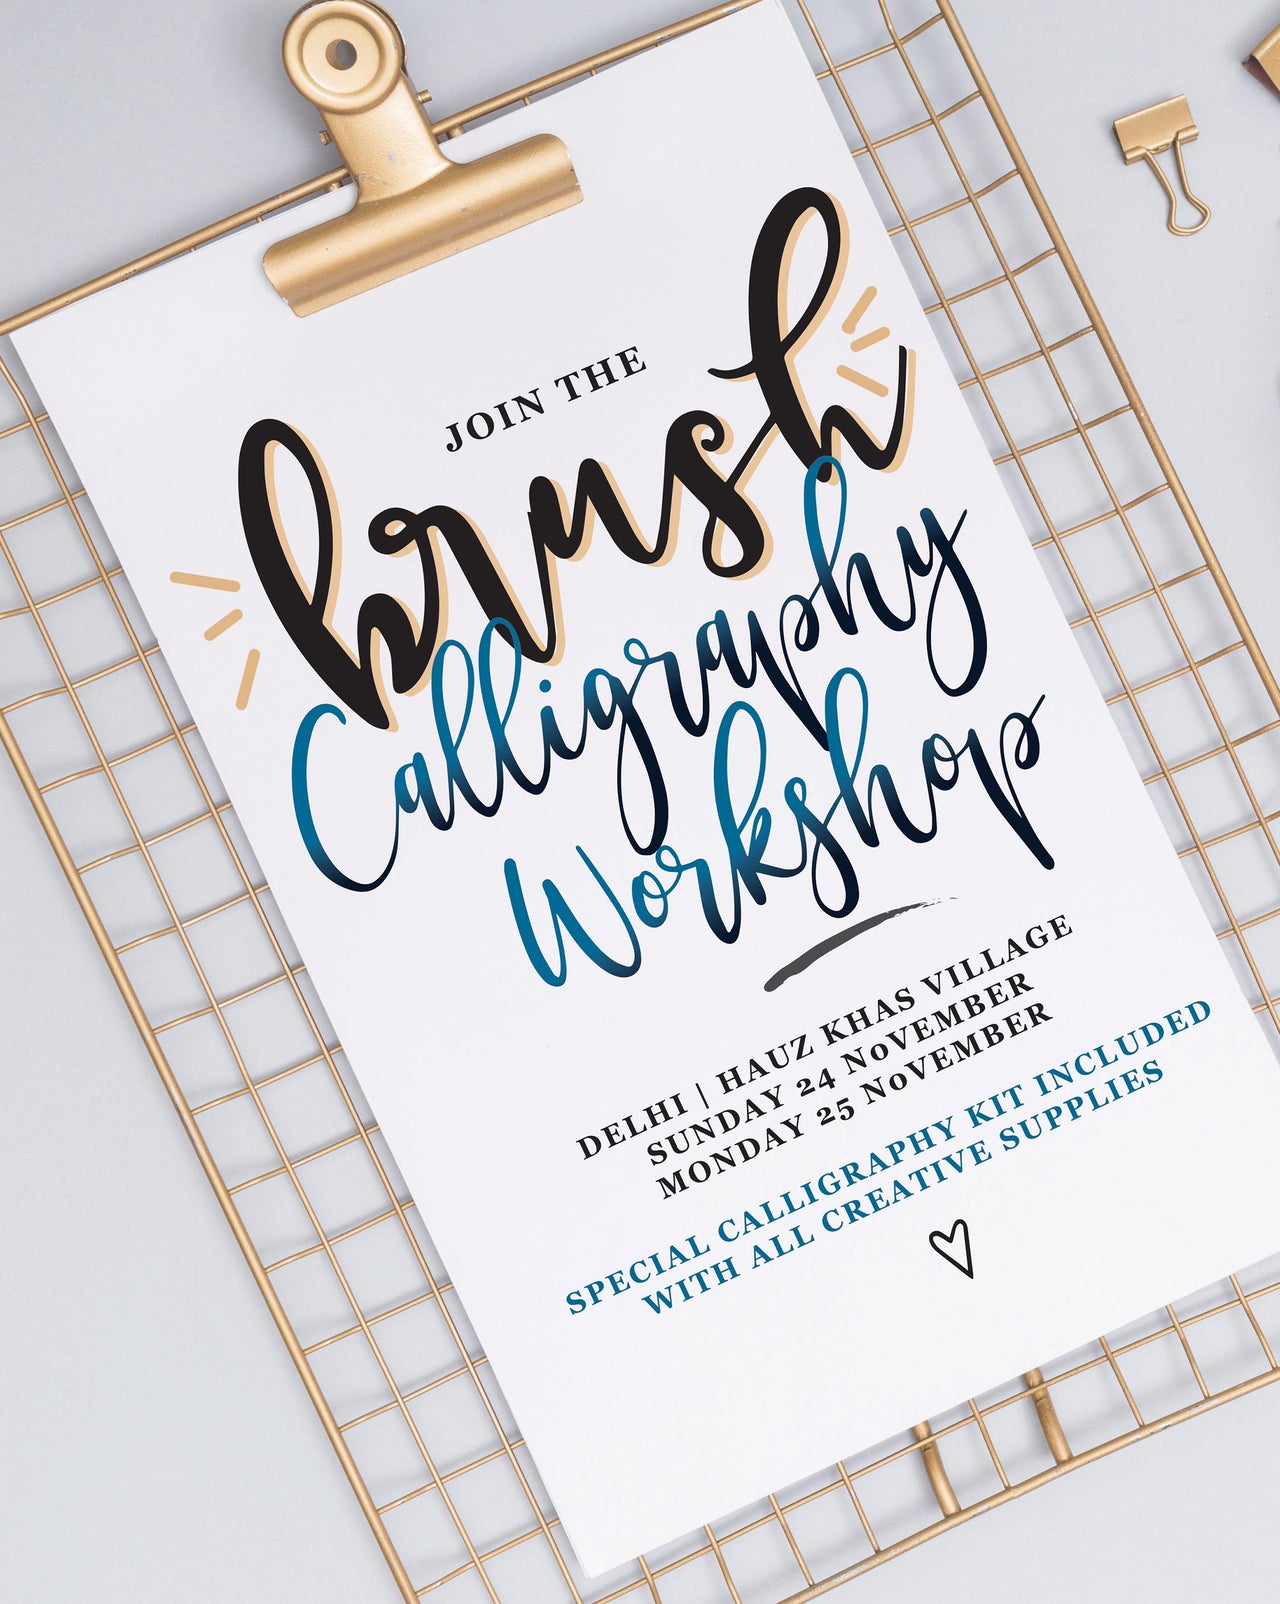 Calligraphy Workshop November 25, 2019, Delhi